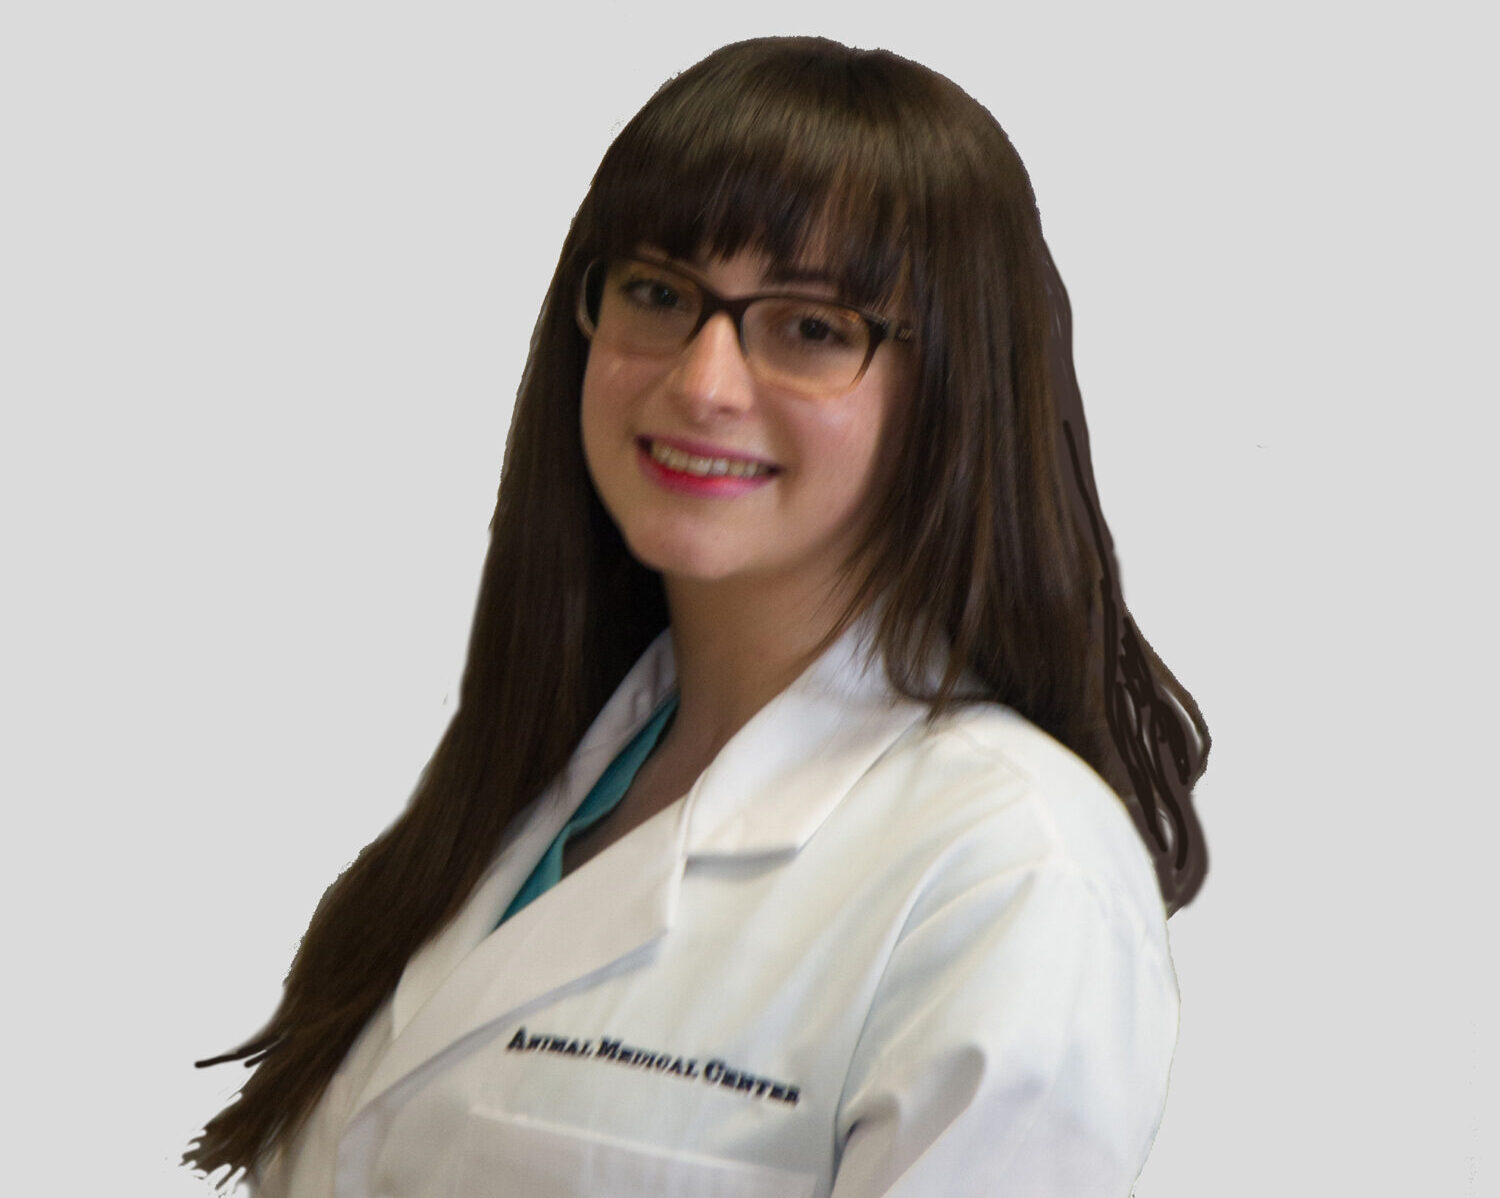 Dr. Alexandra Kravitz of the Animal Medical Center in New York City